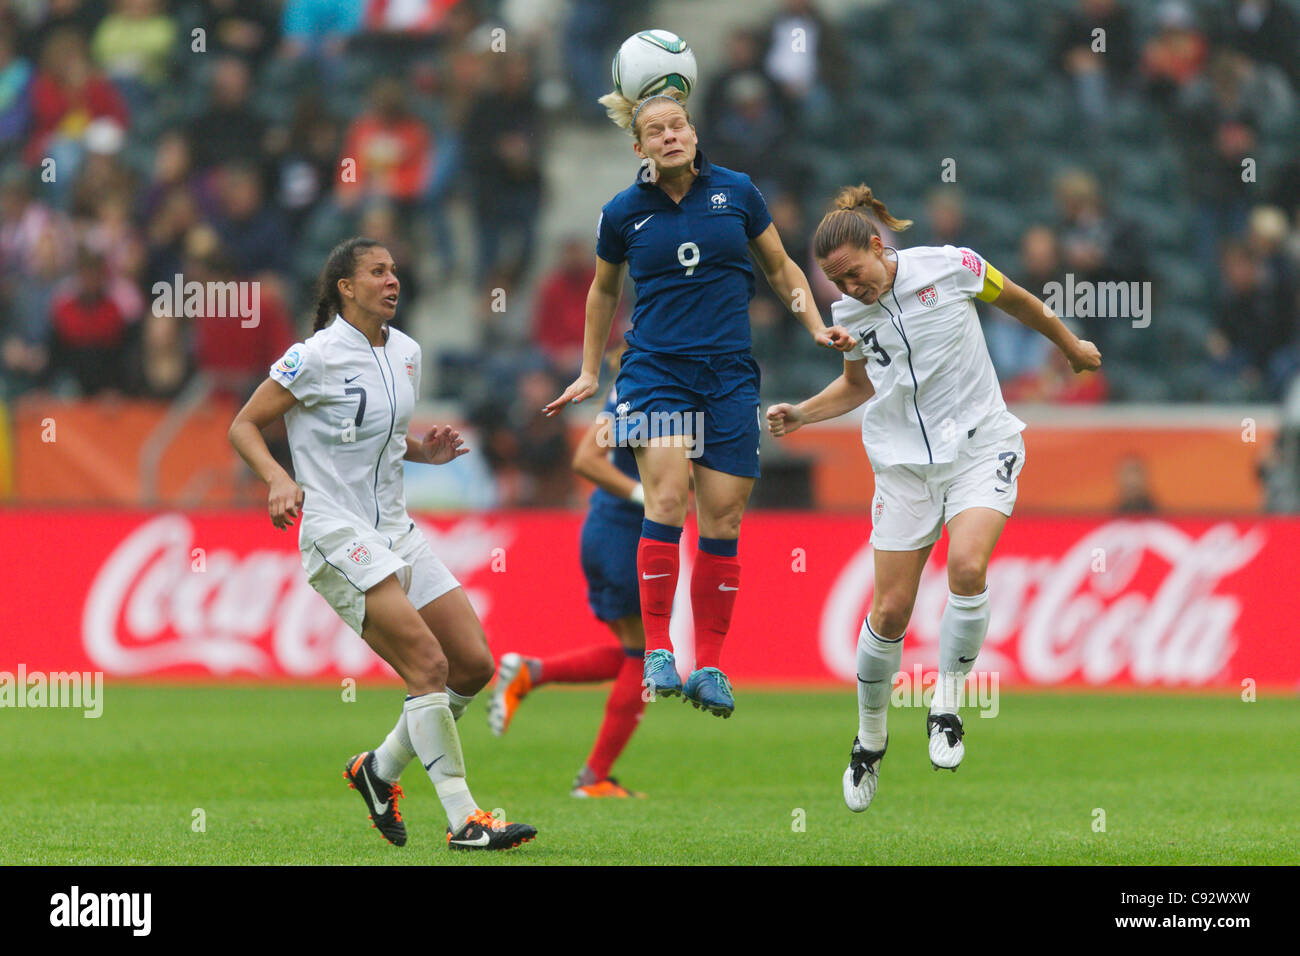 Eugénie le sommer de la France (C) est à la tête de la balle contre les joueurs USA Shannon Boxx (L) et Christie Rampone - demi-finale de la Coupe du monde. Banque D'Images